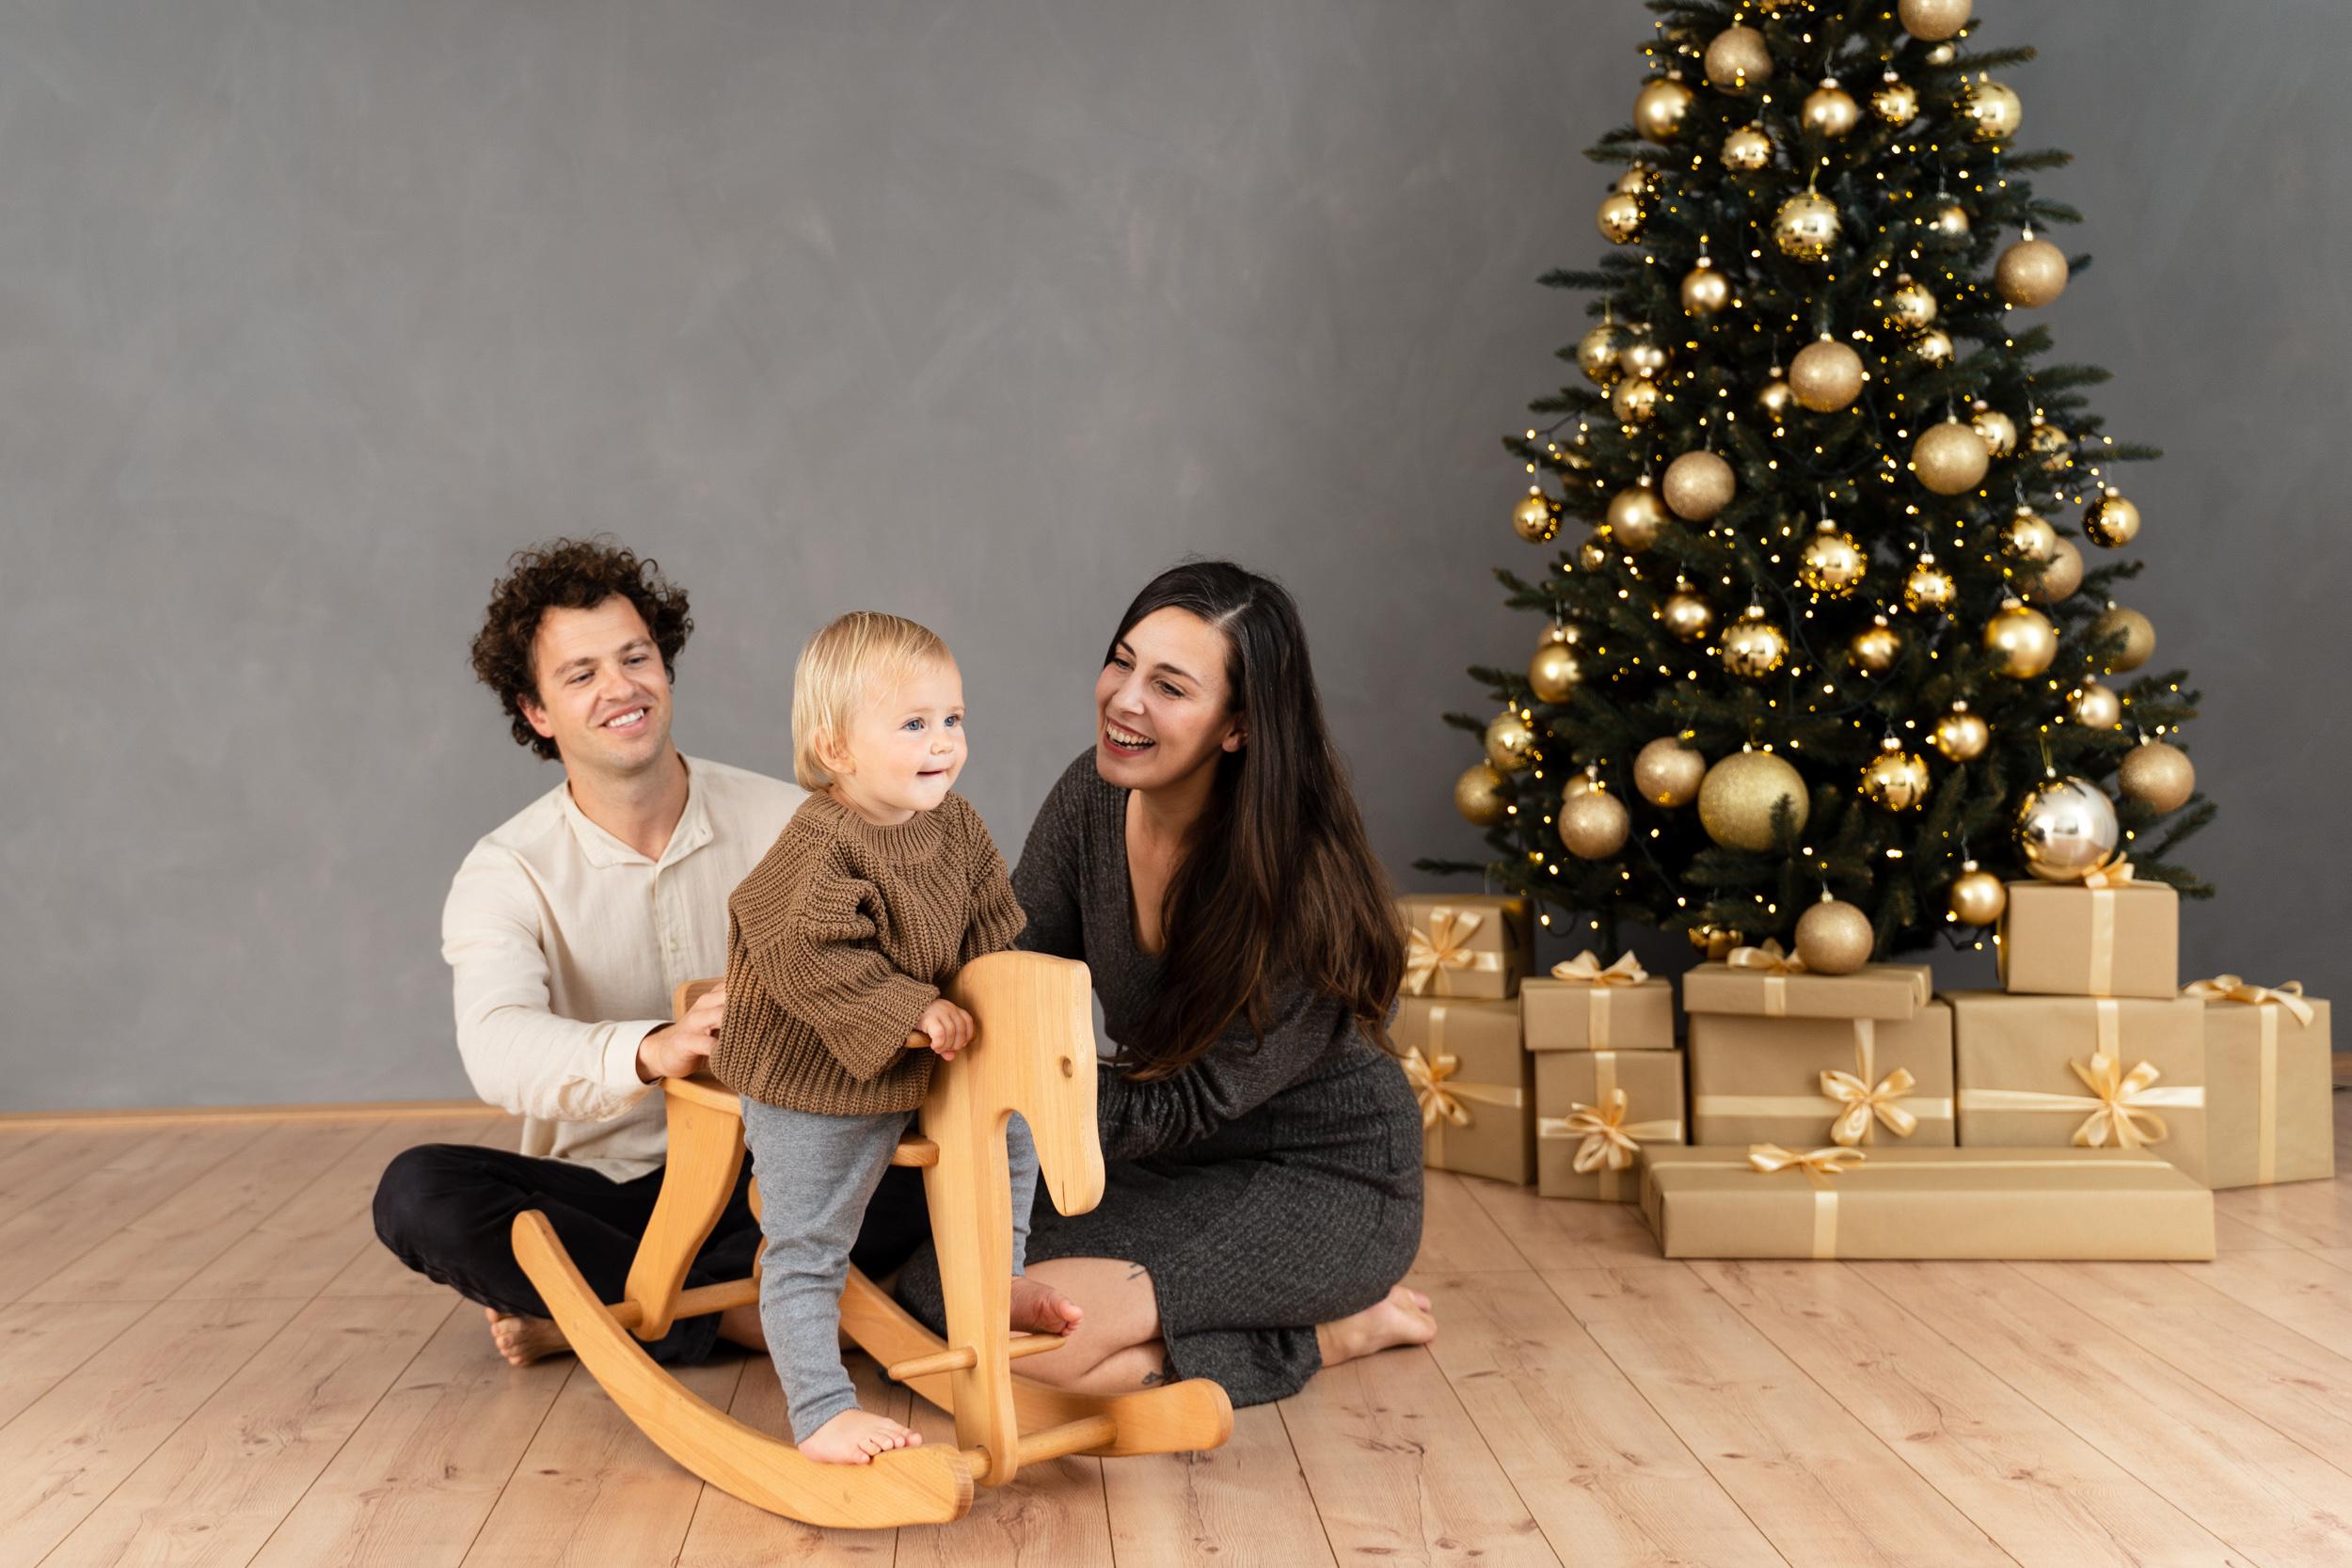 Zabavno božično fotografiranje za vso družino. Fotostudio v Ljubljani 2022